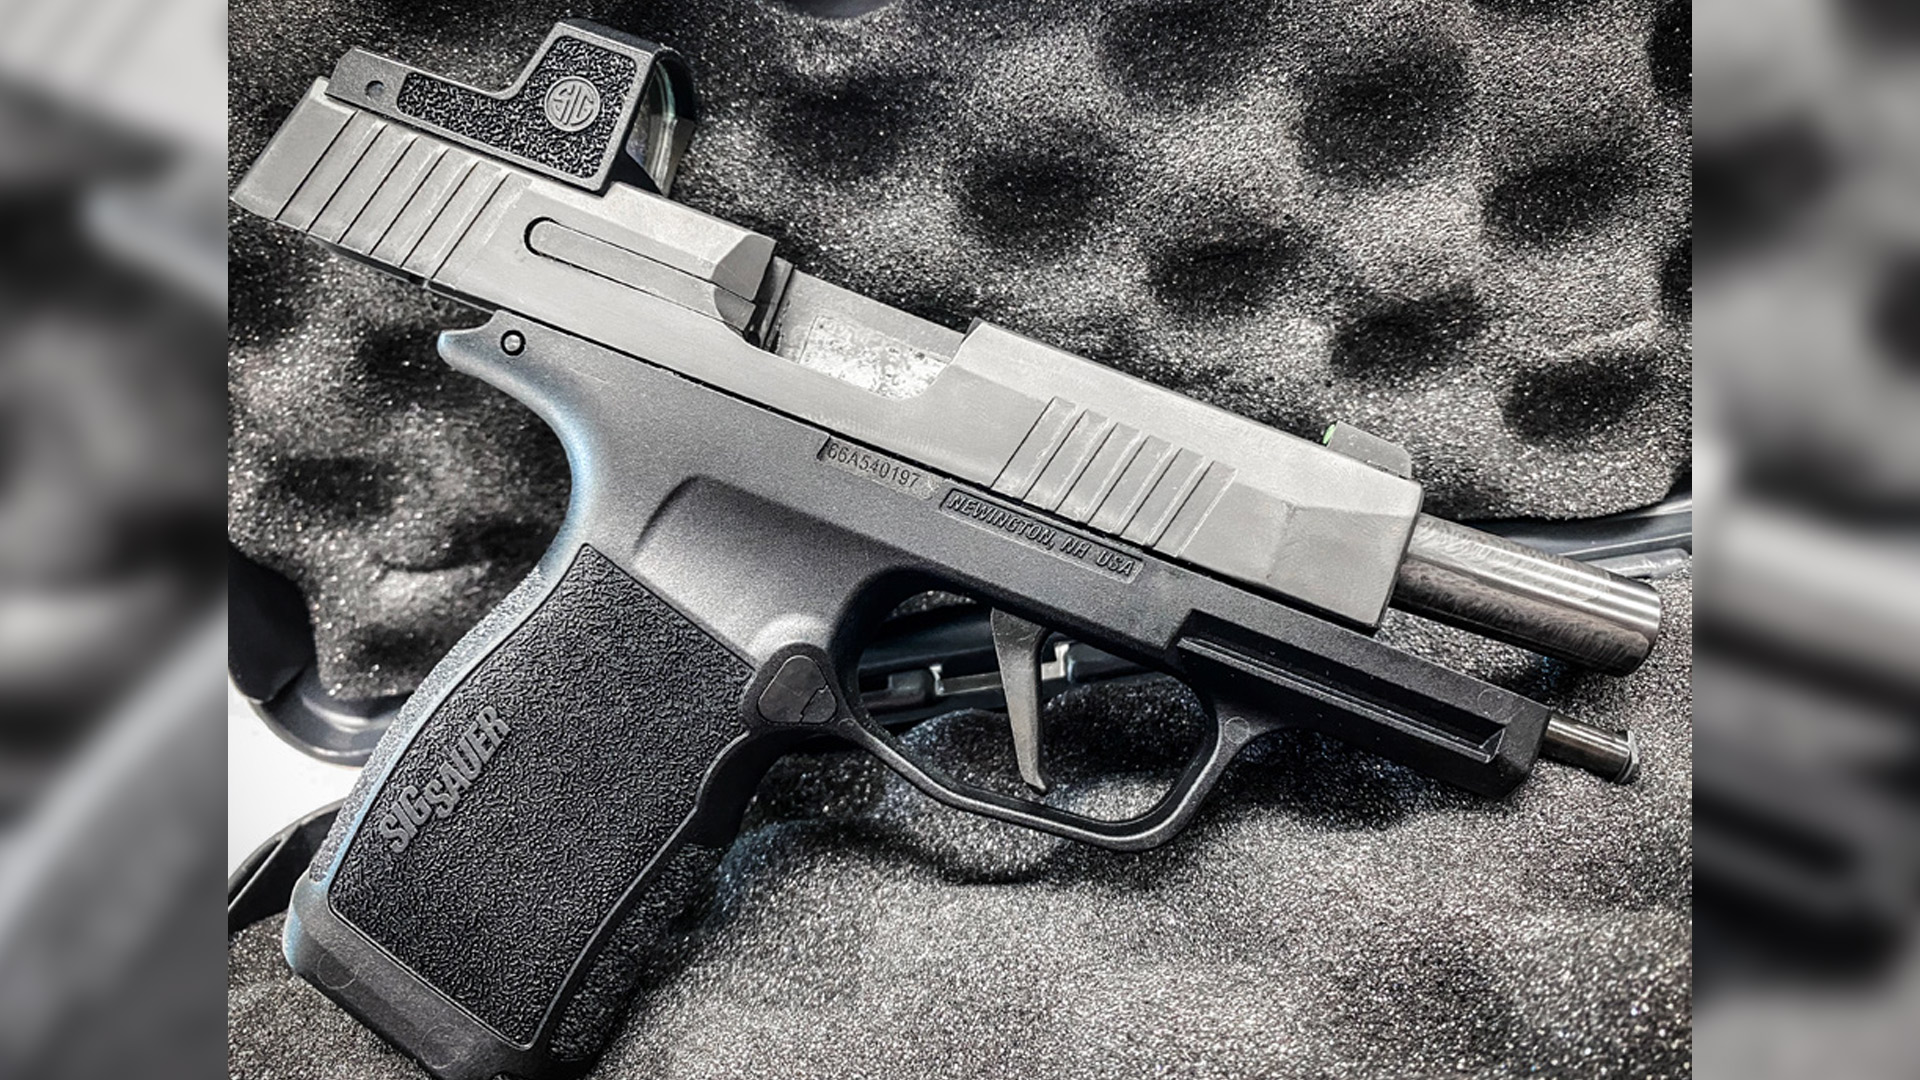 SIG P365 XL pistol